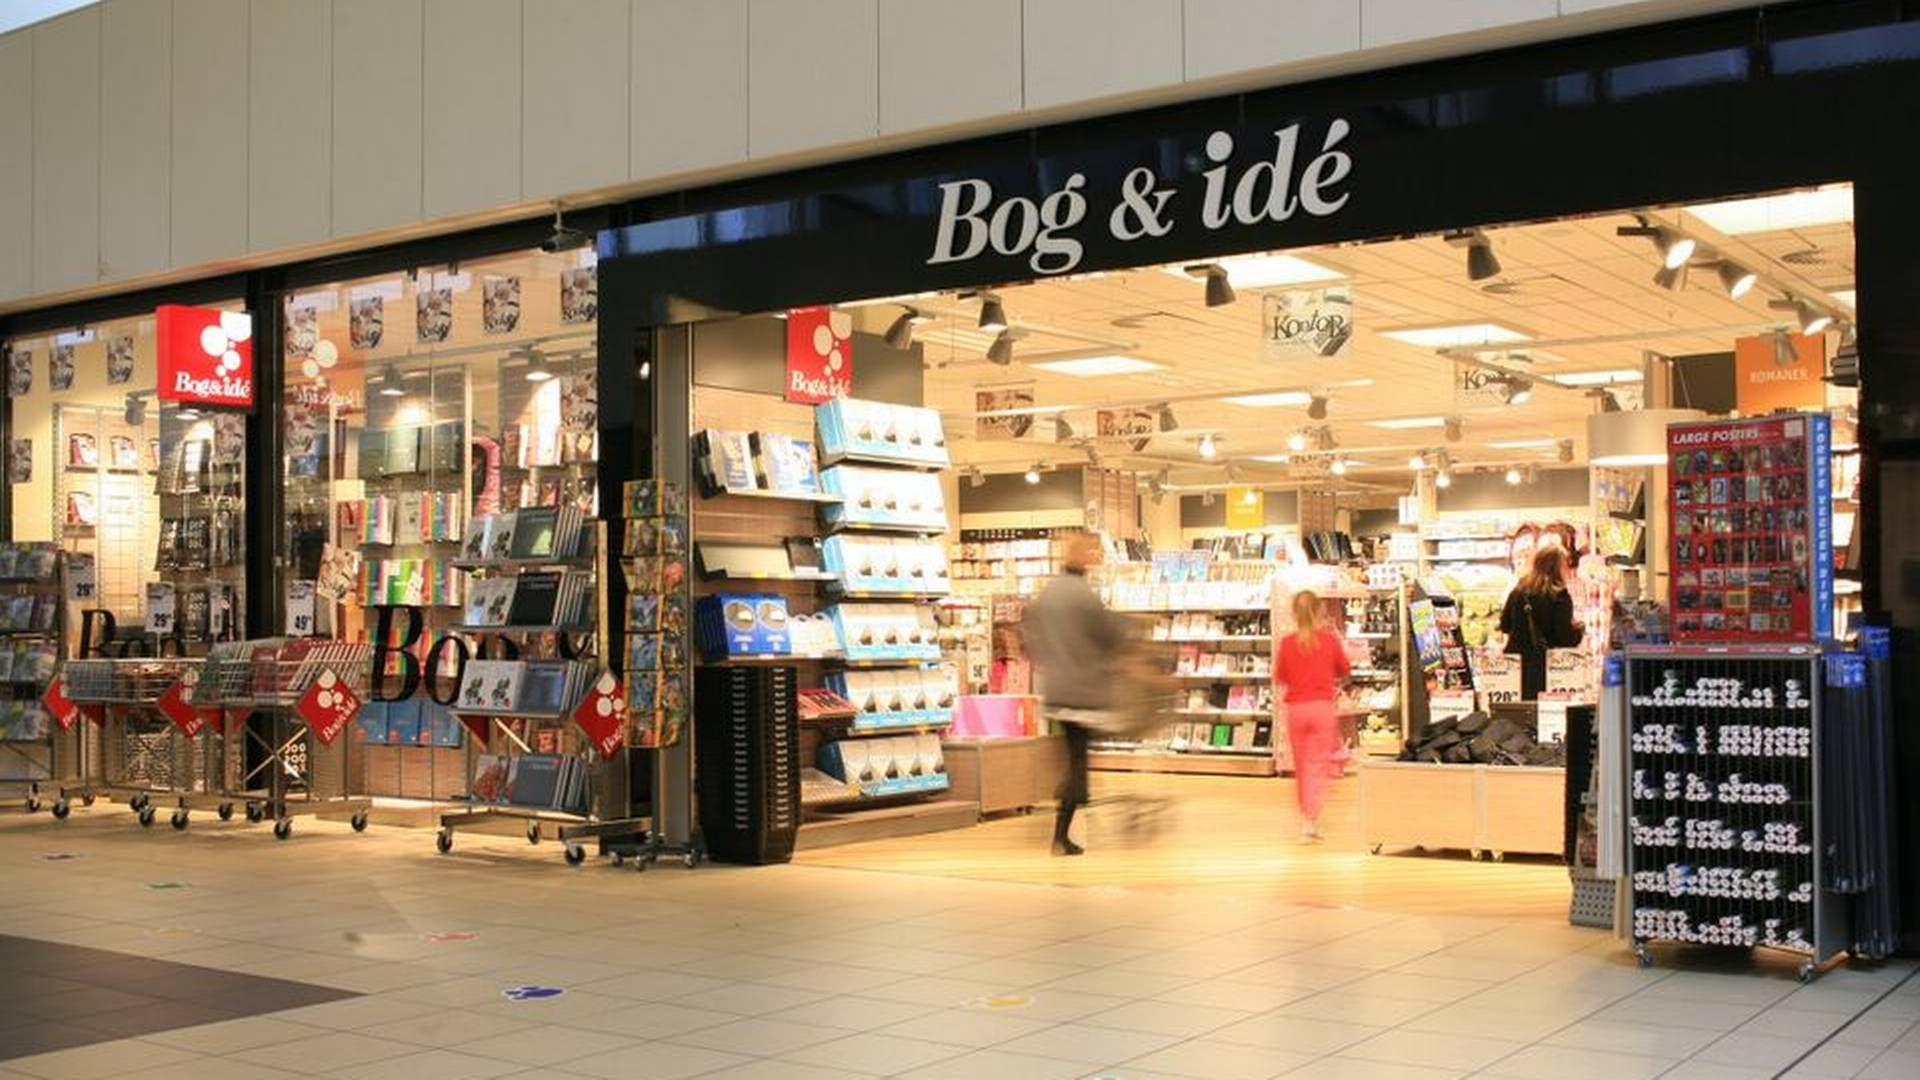 Indeks Retail er indkøbsselskab for bl.a. Bog & Idé, der er Danmarks største kæde af boghandlere. | Foto: Pr/indeks Retail